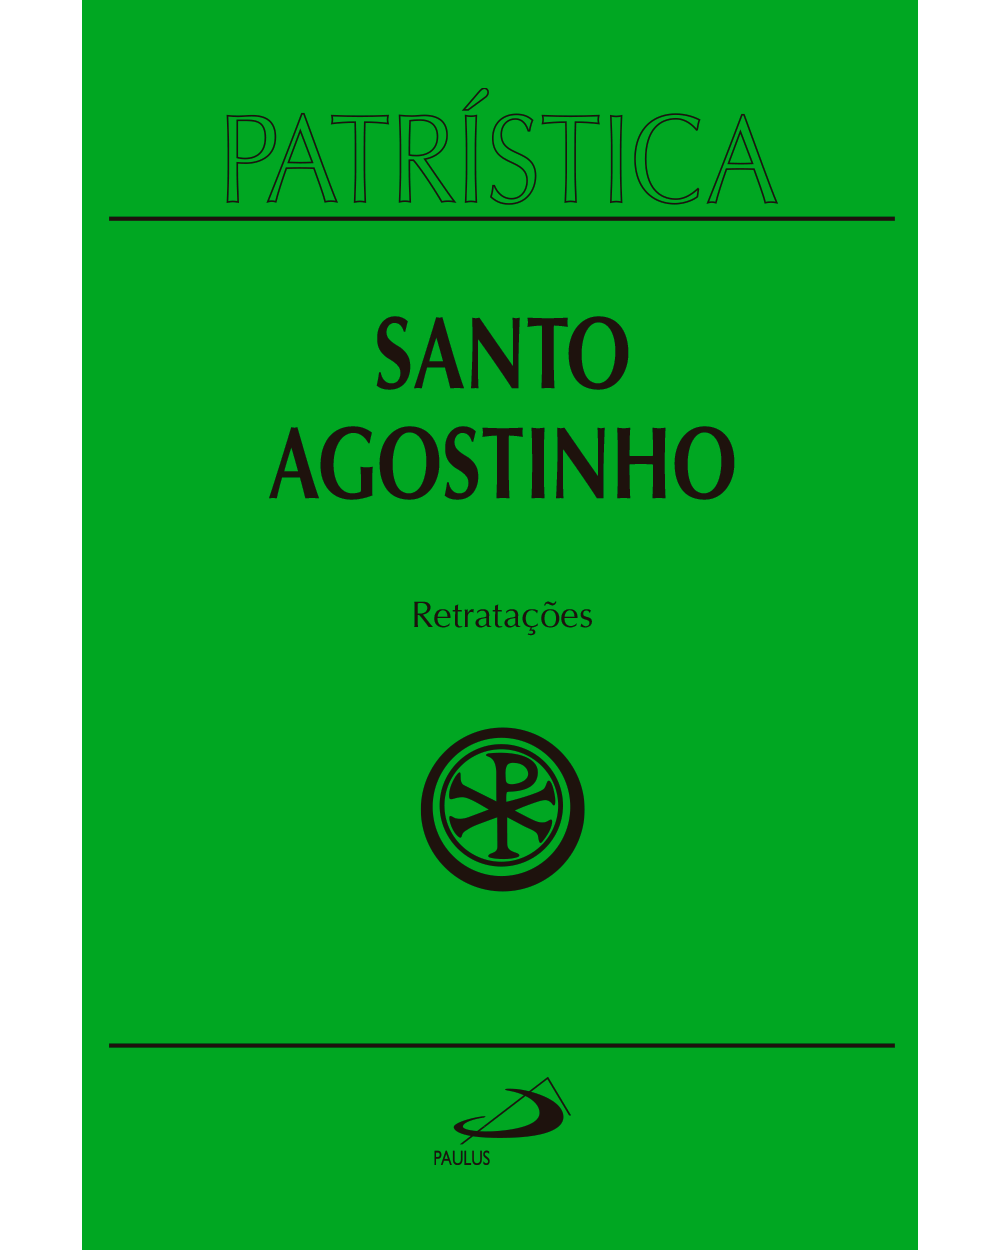 Santo Agostinho - Retratações( patrística 43)